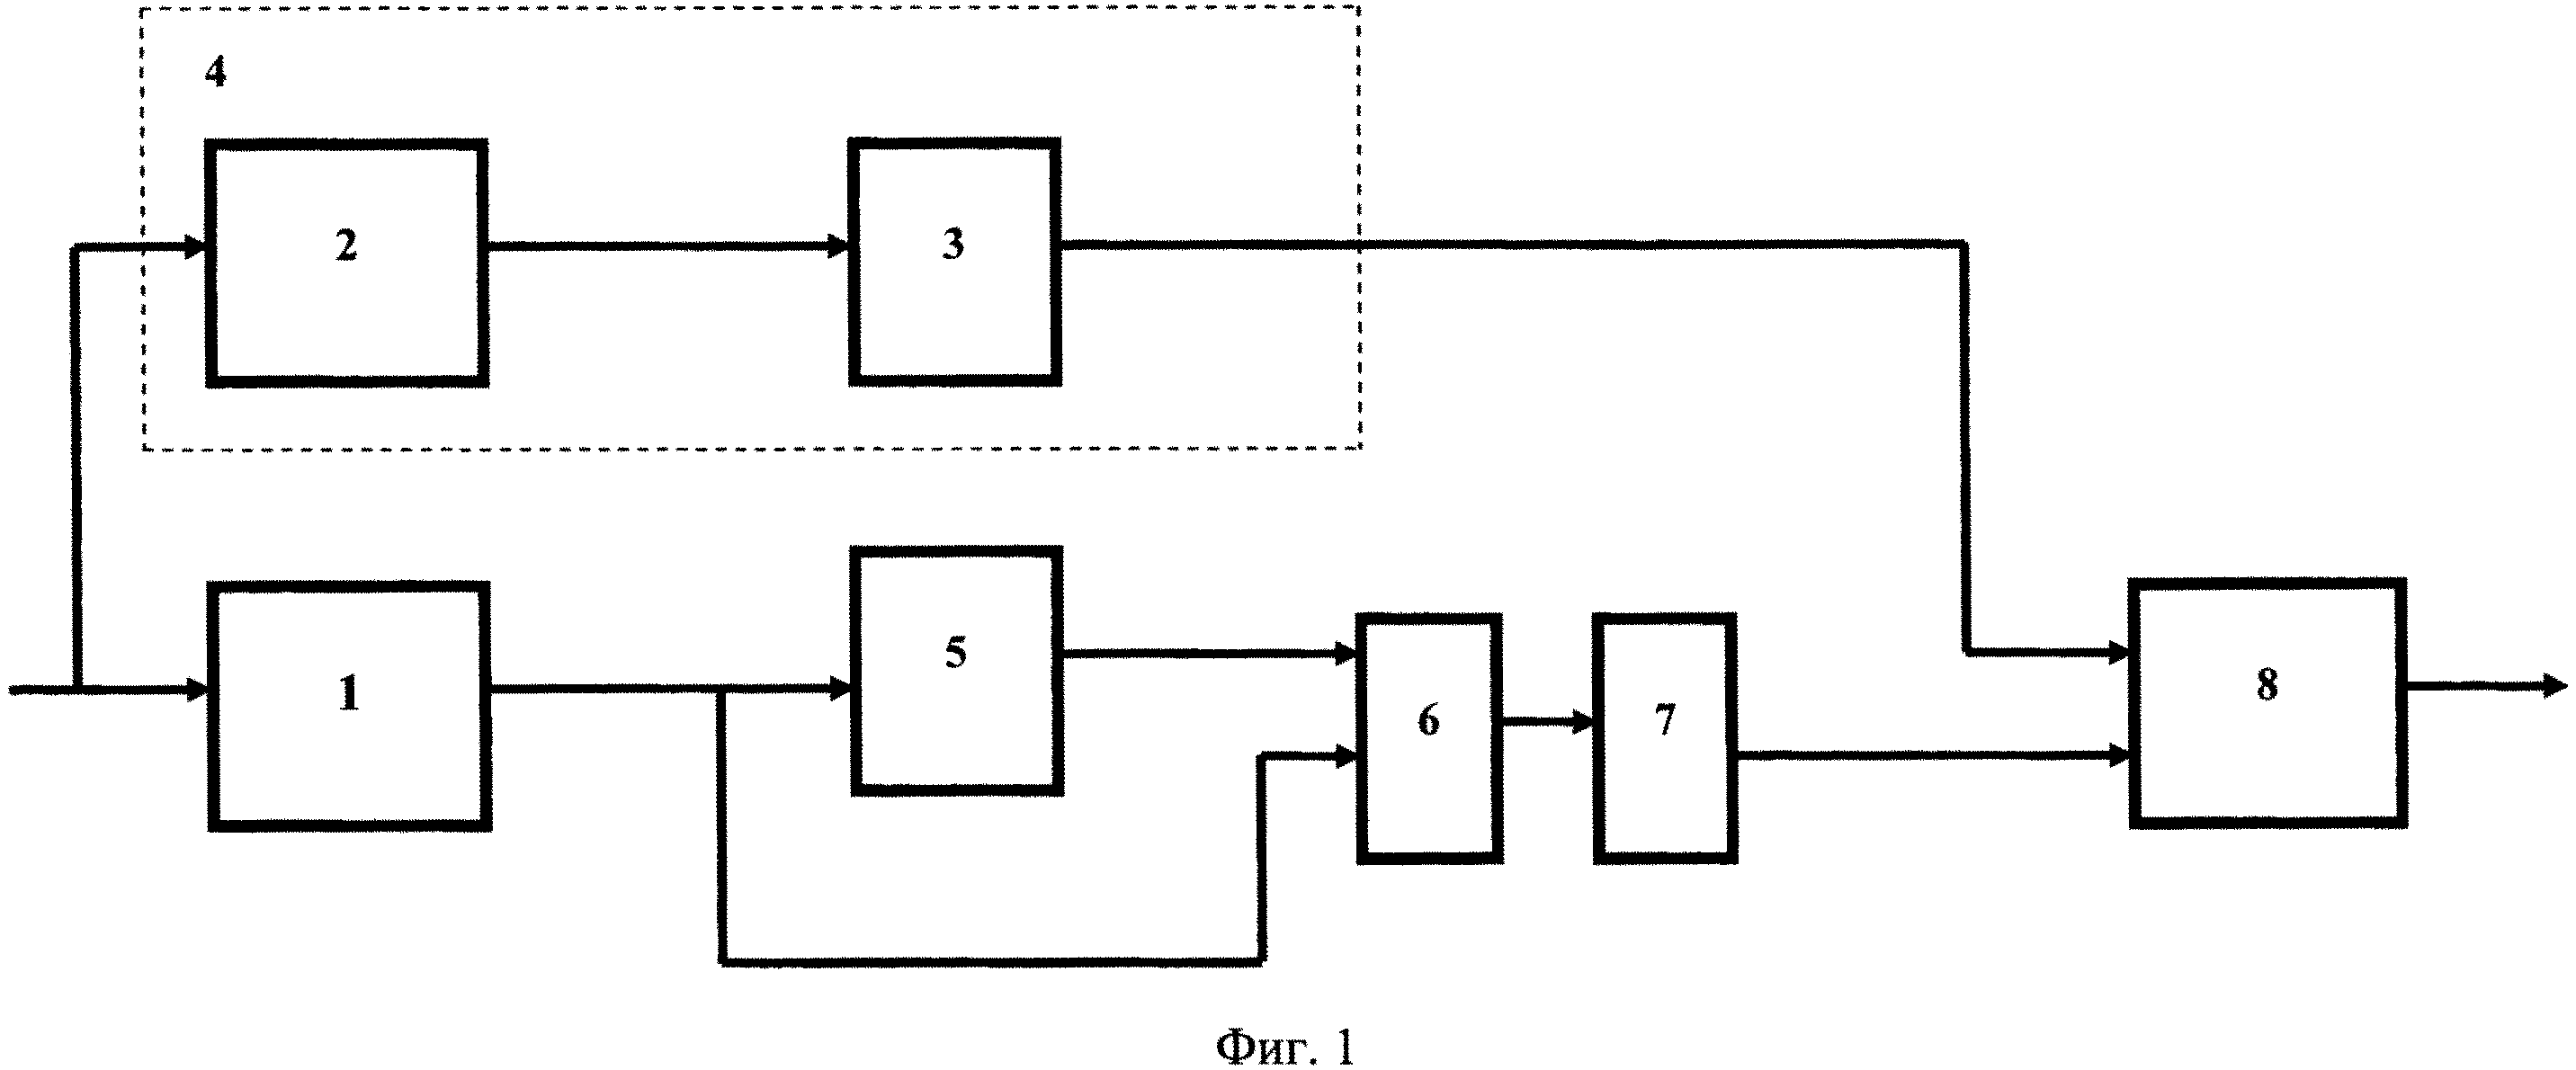 Устройство подавления боковых лепестков при импульсном сжатии многофазных кодов Р3 и Р4 (варианты)